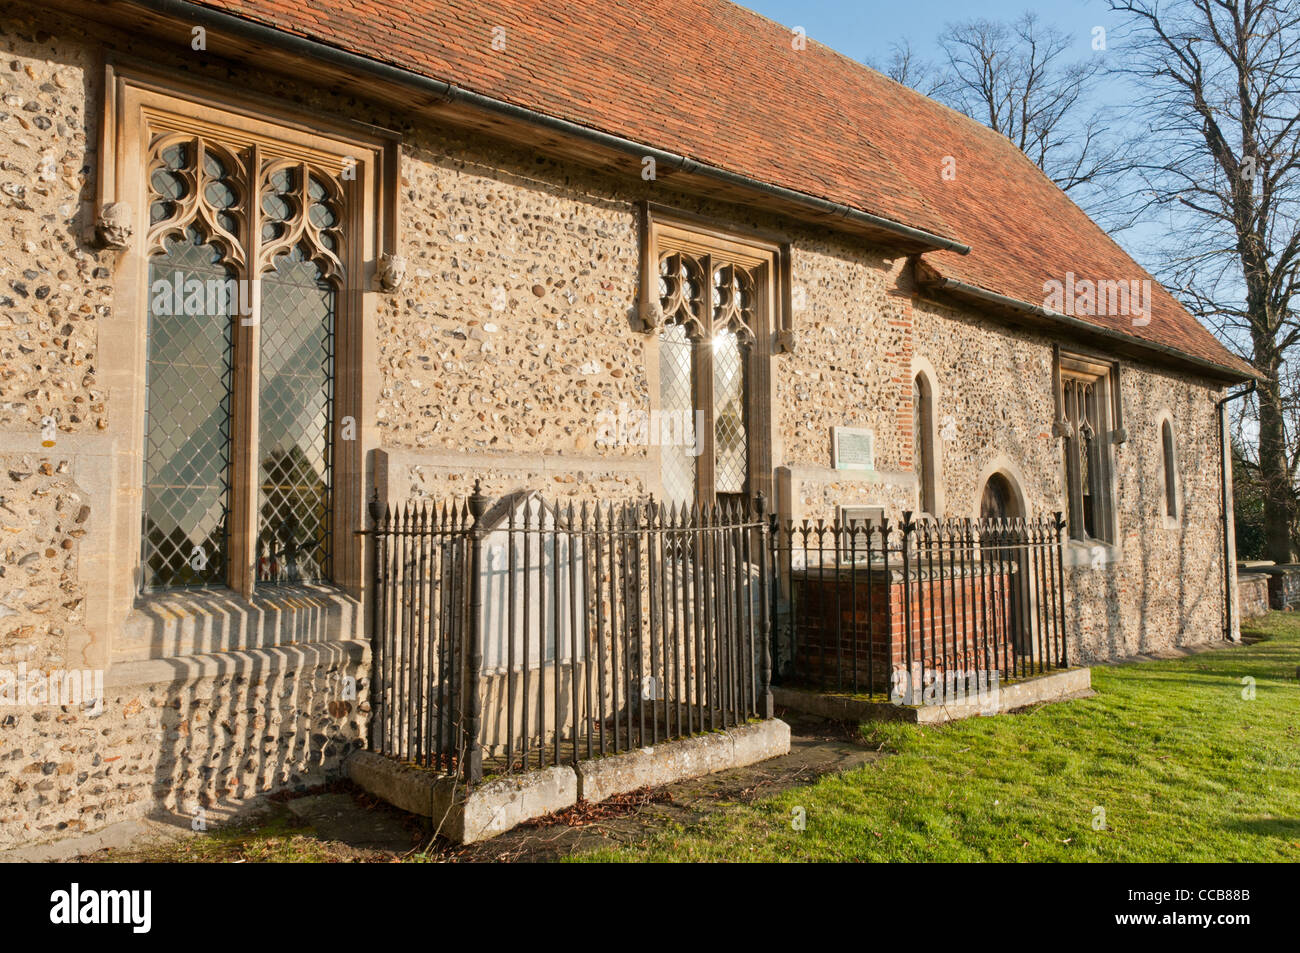 All Saints Church, Laver, Essex, Angleterre montrant la tombe du philosophe anglais John Locke. Banque D'Images